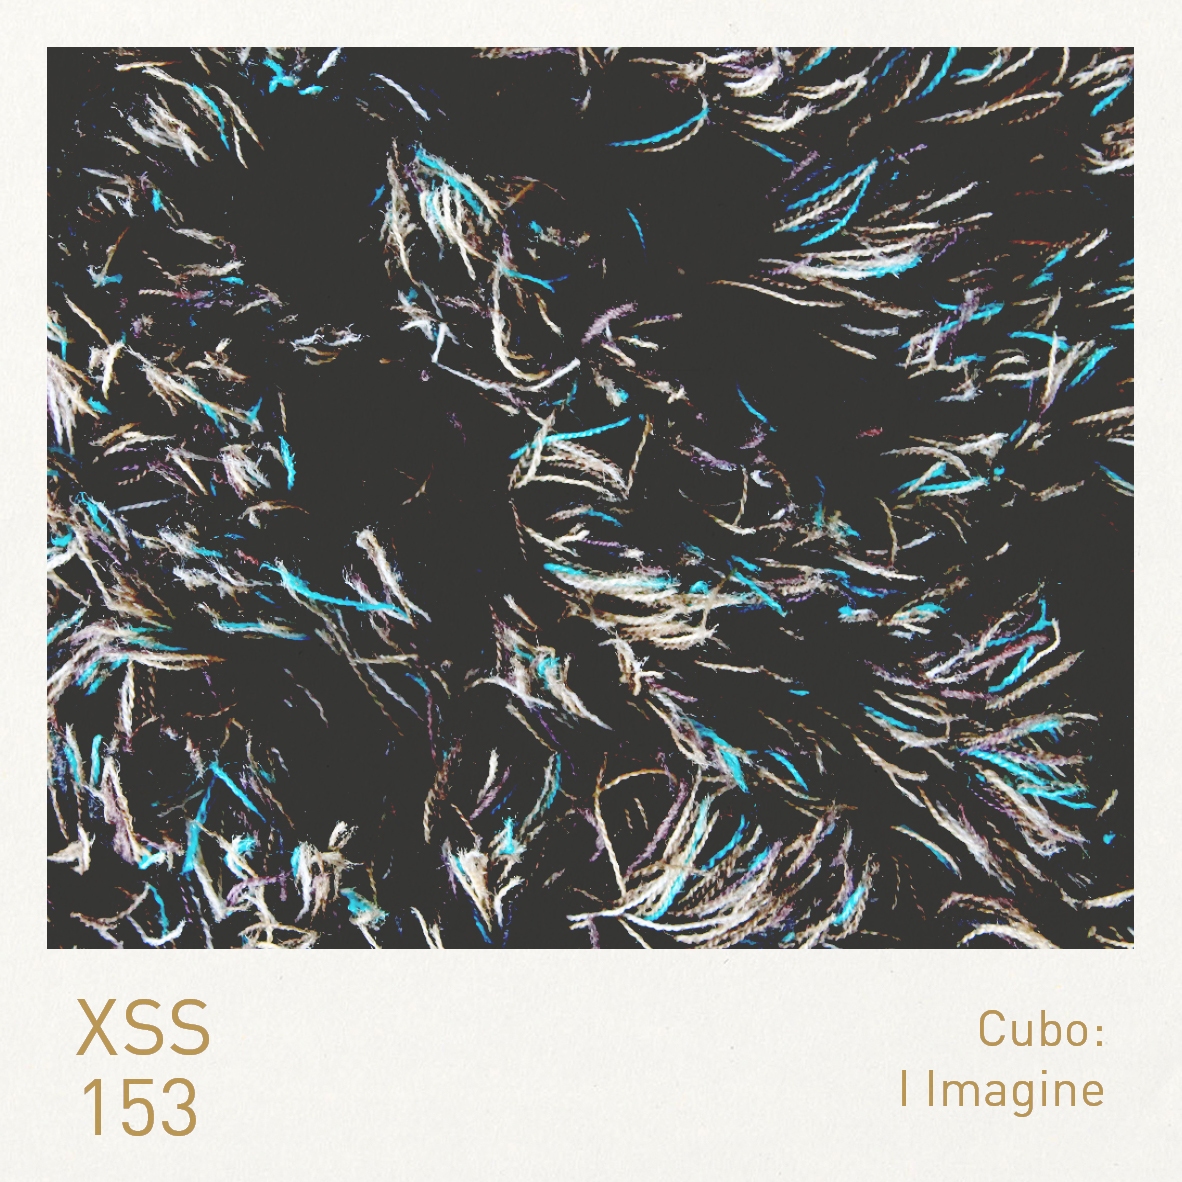 XSS153 | Cubo | I Imagine